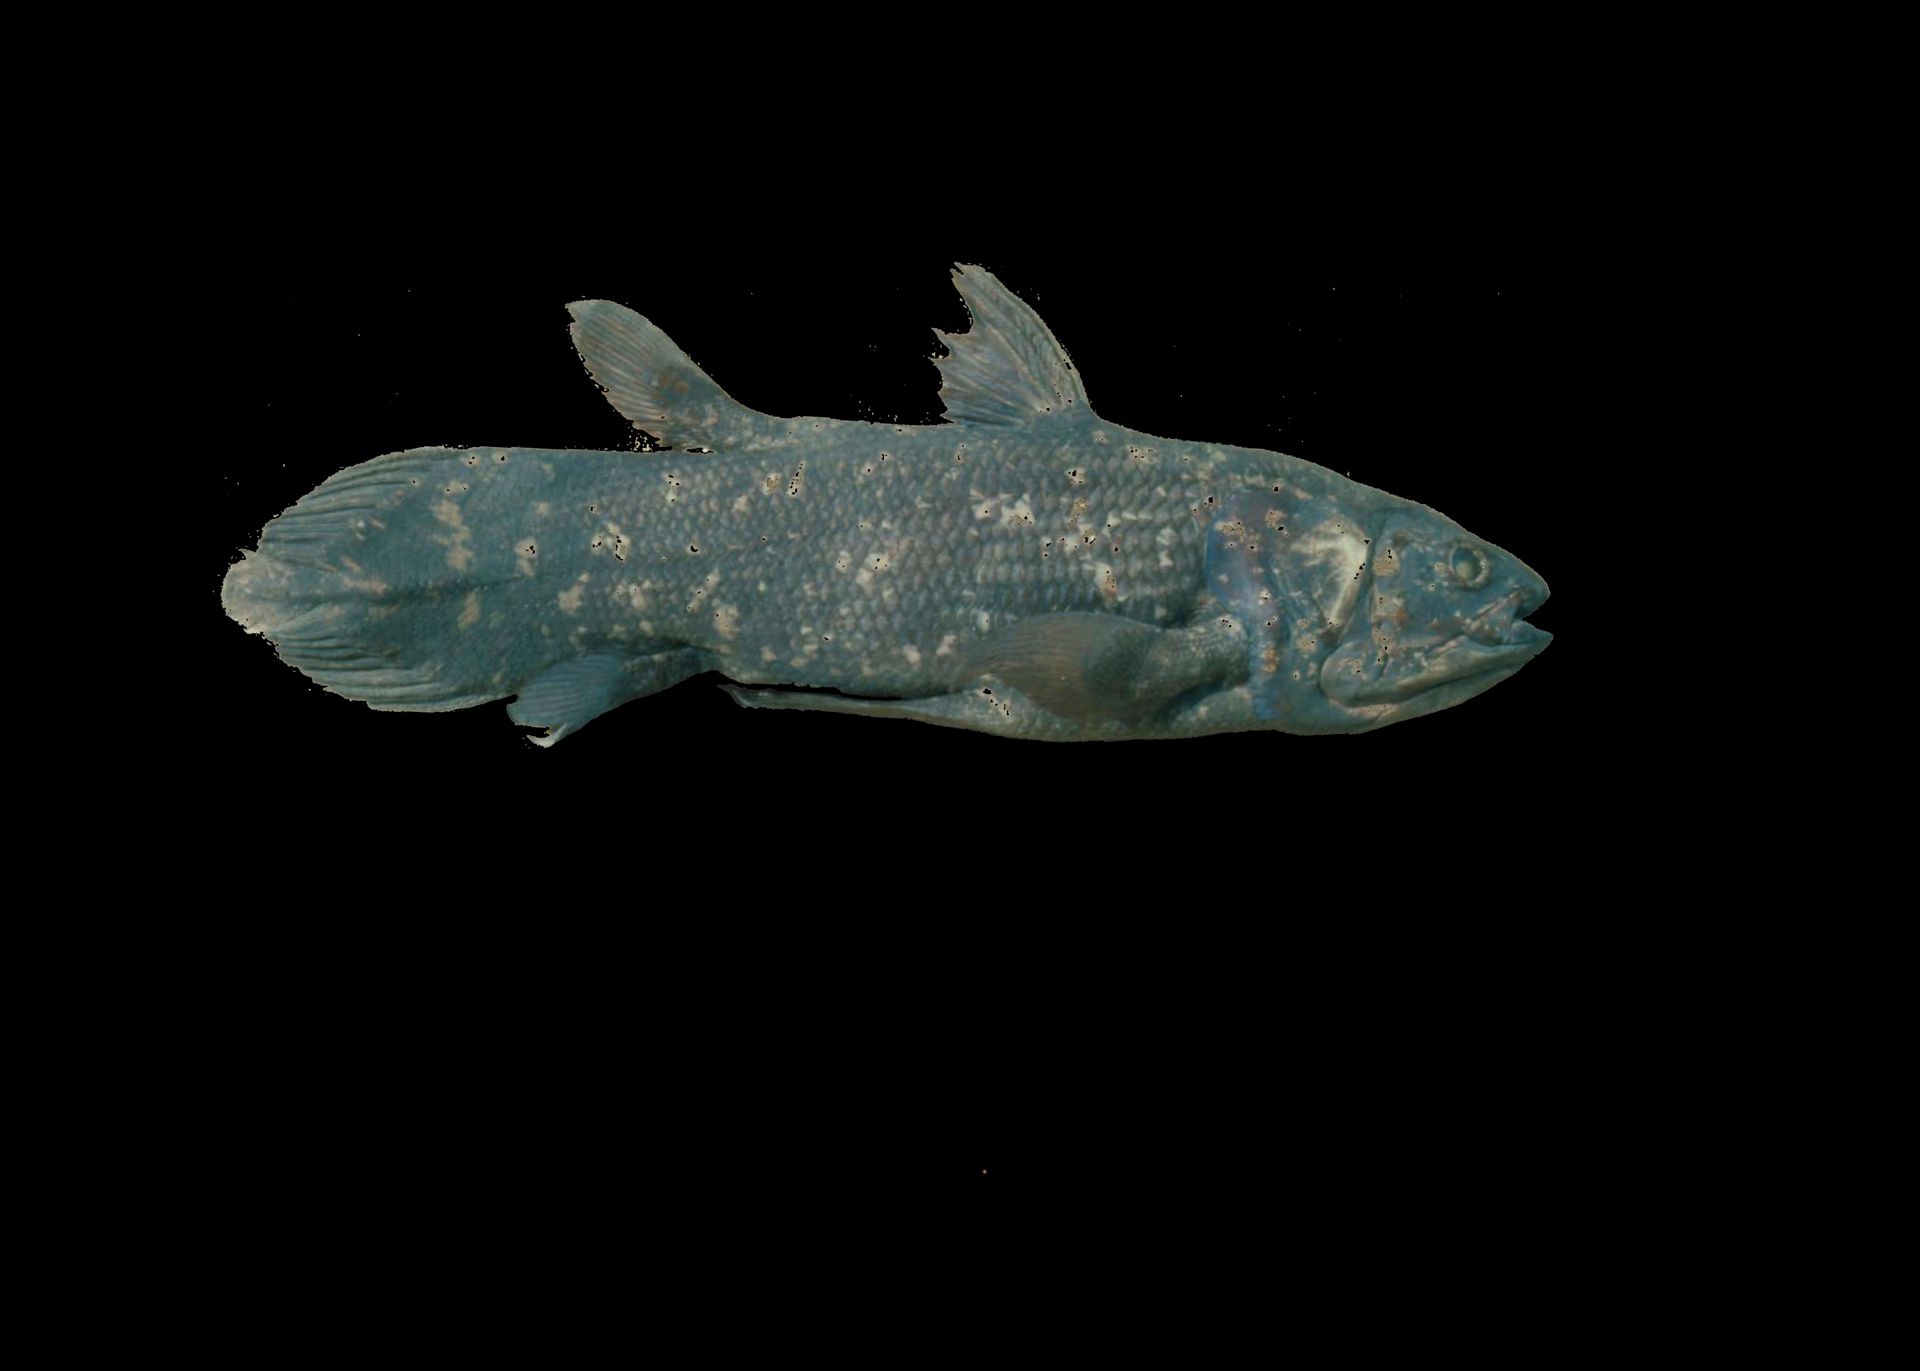 En gråbrun, flekkete fisk med to ryggfinner og spydformet halefinne er avbildet på svart bakgrunn. 